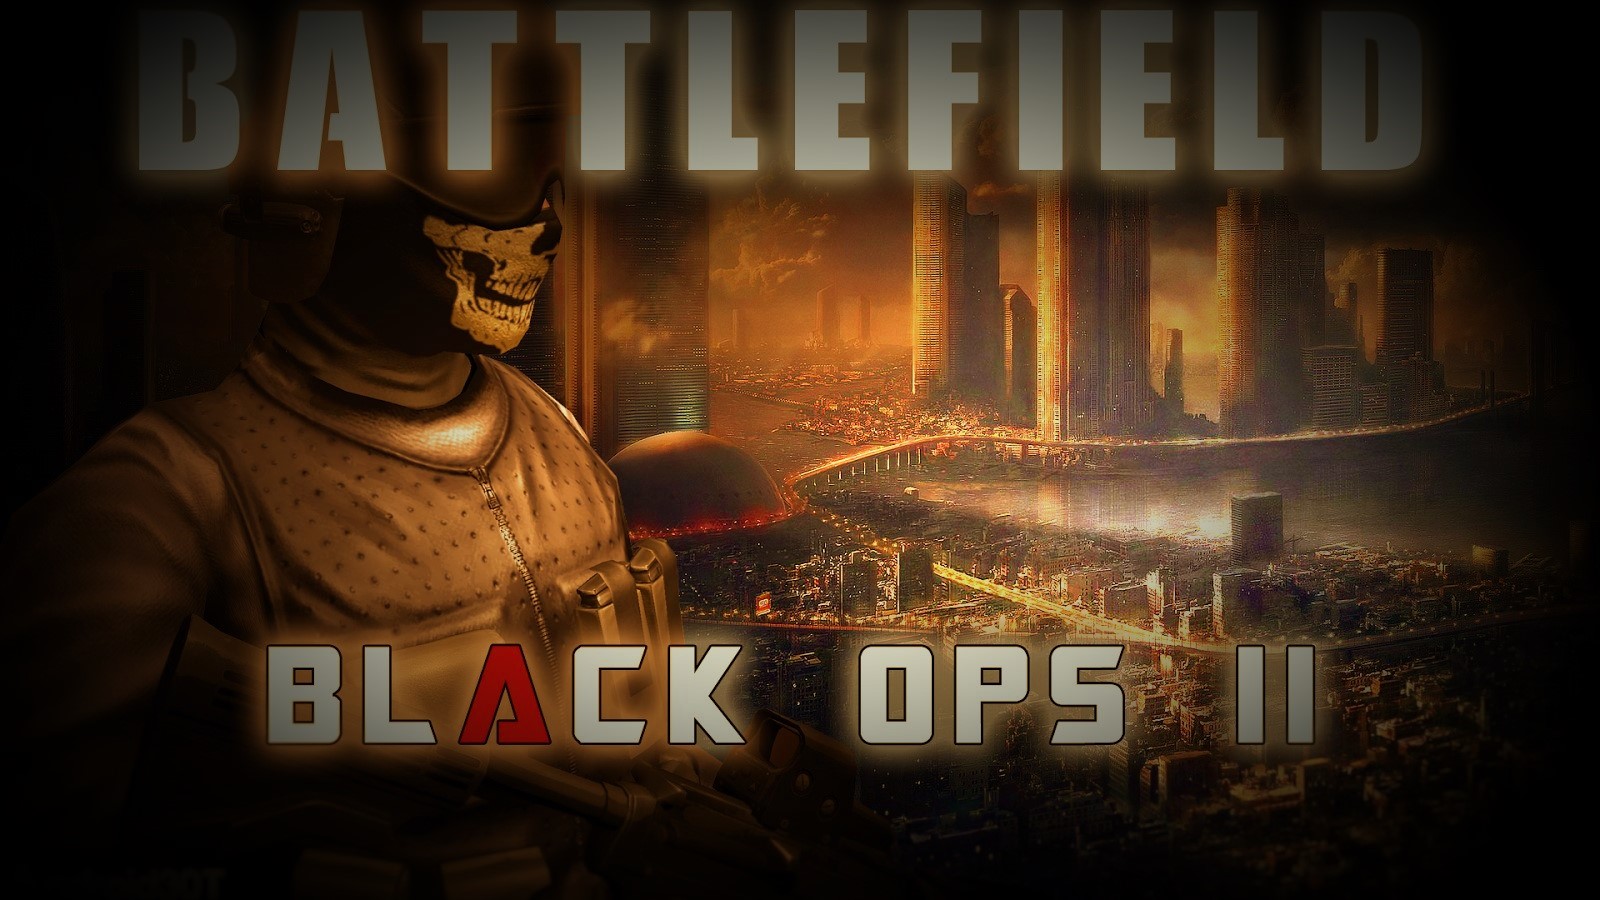 Battlefield Combat Black Ops 2(ماموریت گروه سیاه 2)